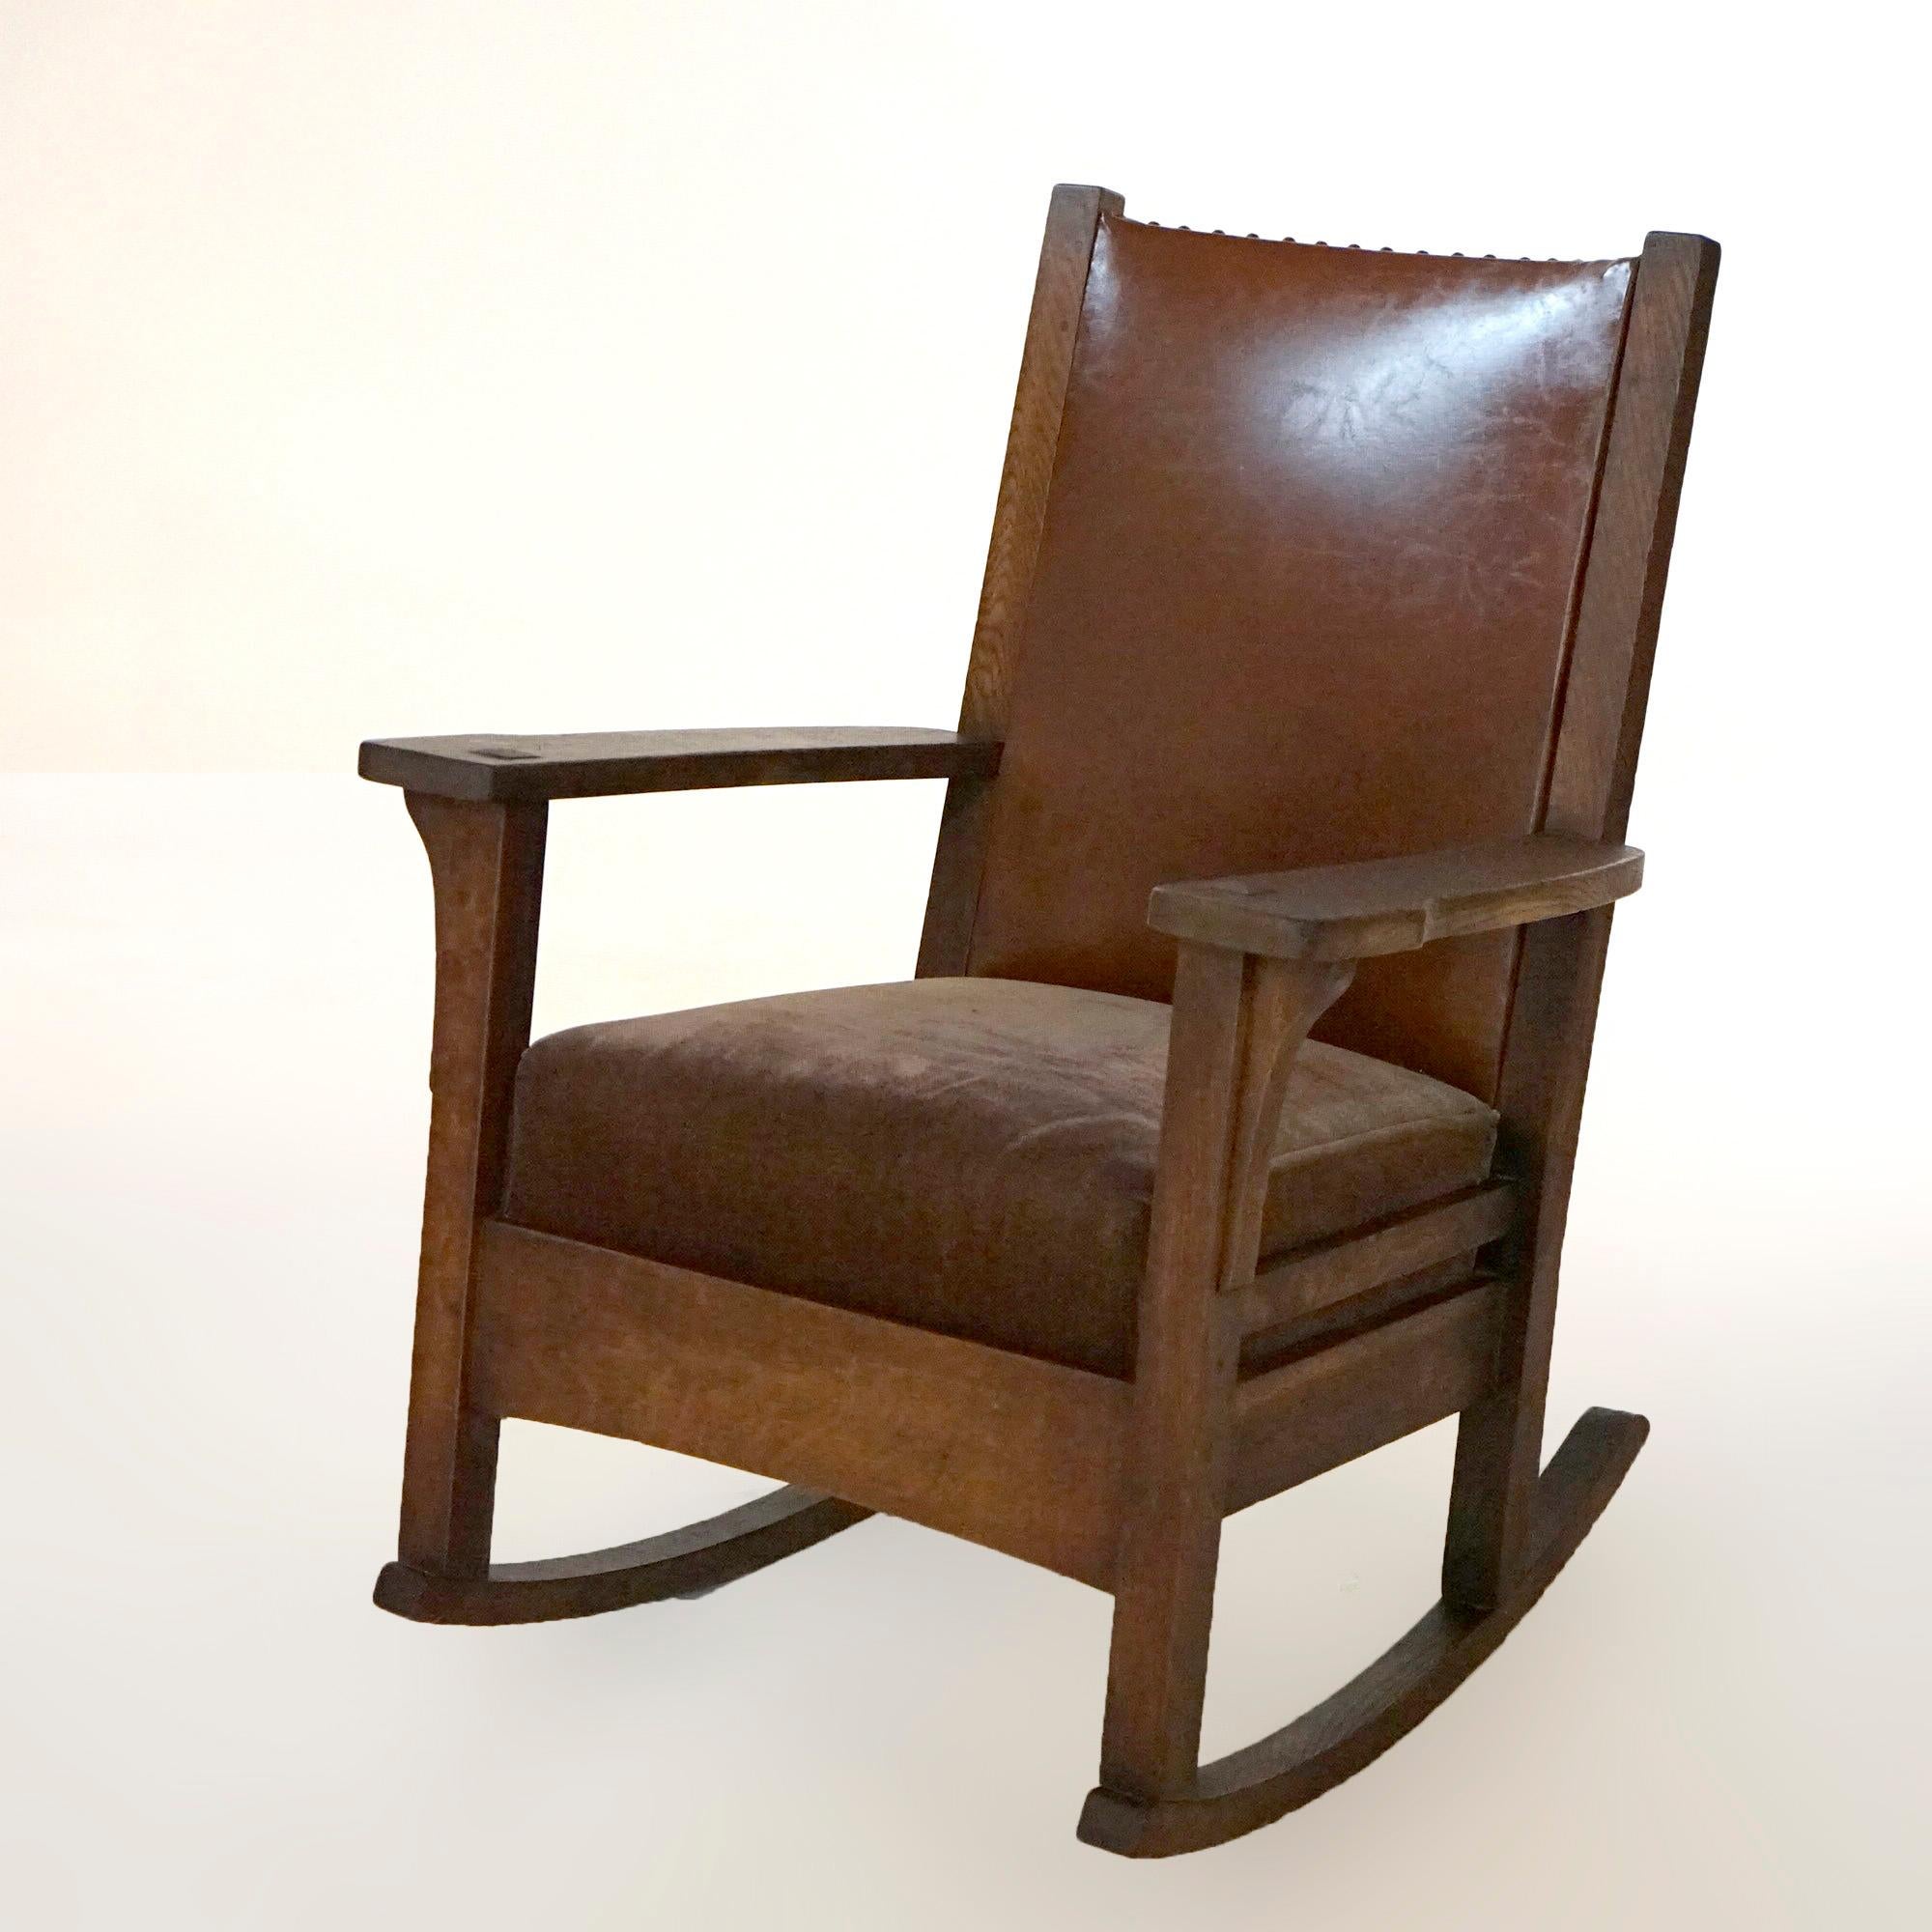 Une chaise à bascule antique Arts and Crafts Mission par JM Young offre une construction en chêne scié sur quartier avec un dossier et un siège rembourrés, chaque bras ayant des corbeaux concaves, c1910.

Mesures- 36,5''H x 28''L x 31,75''P ;